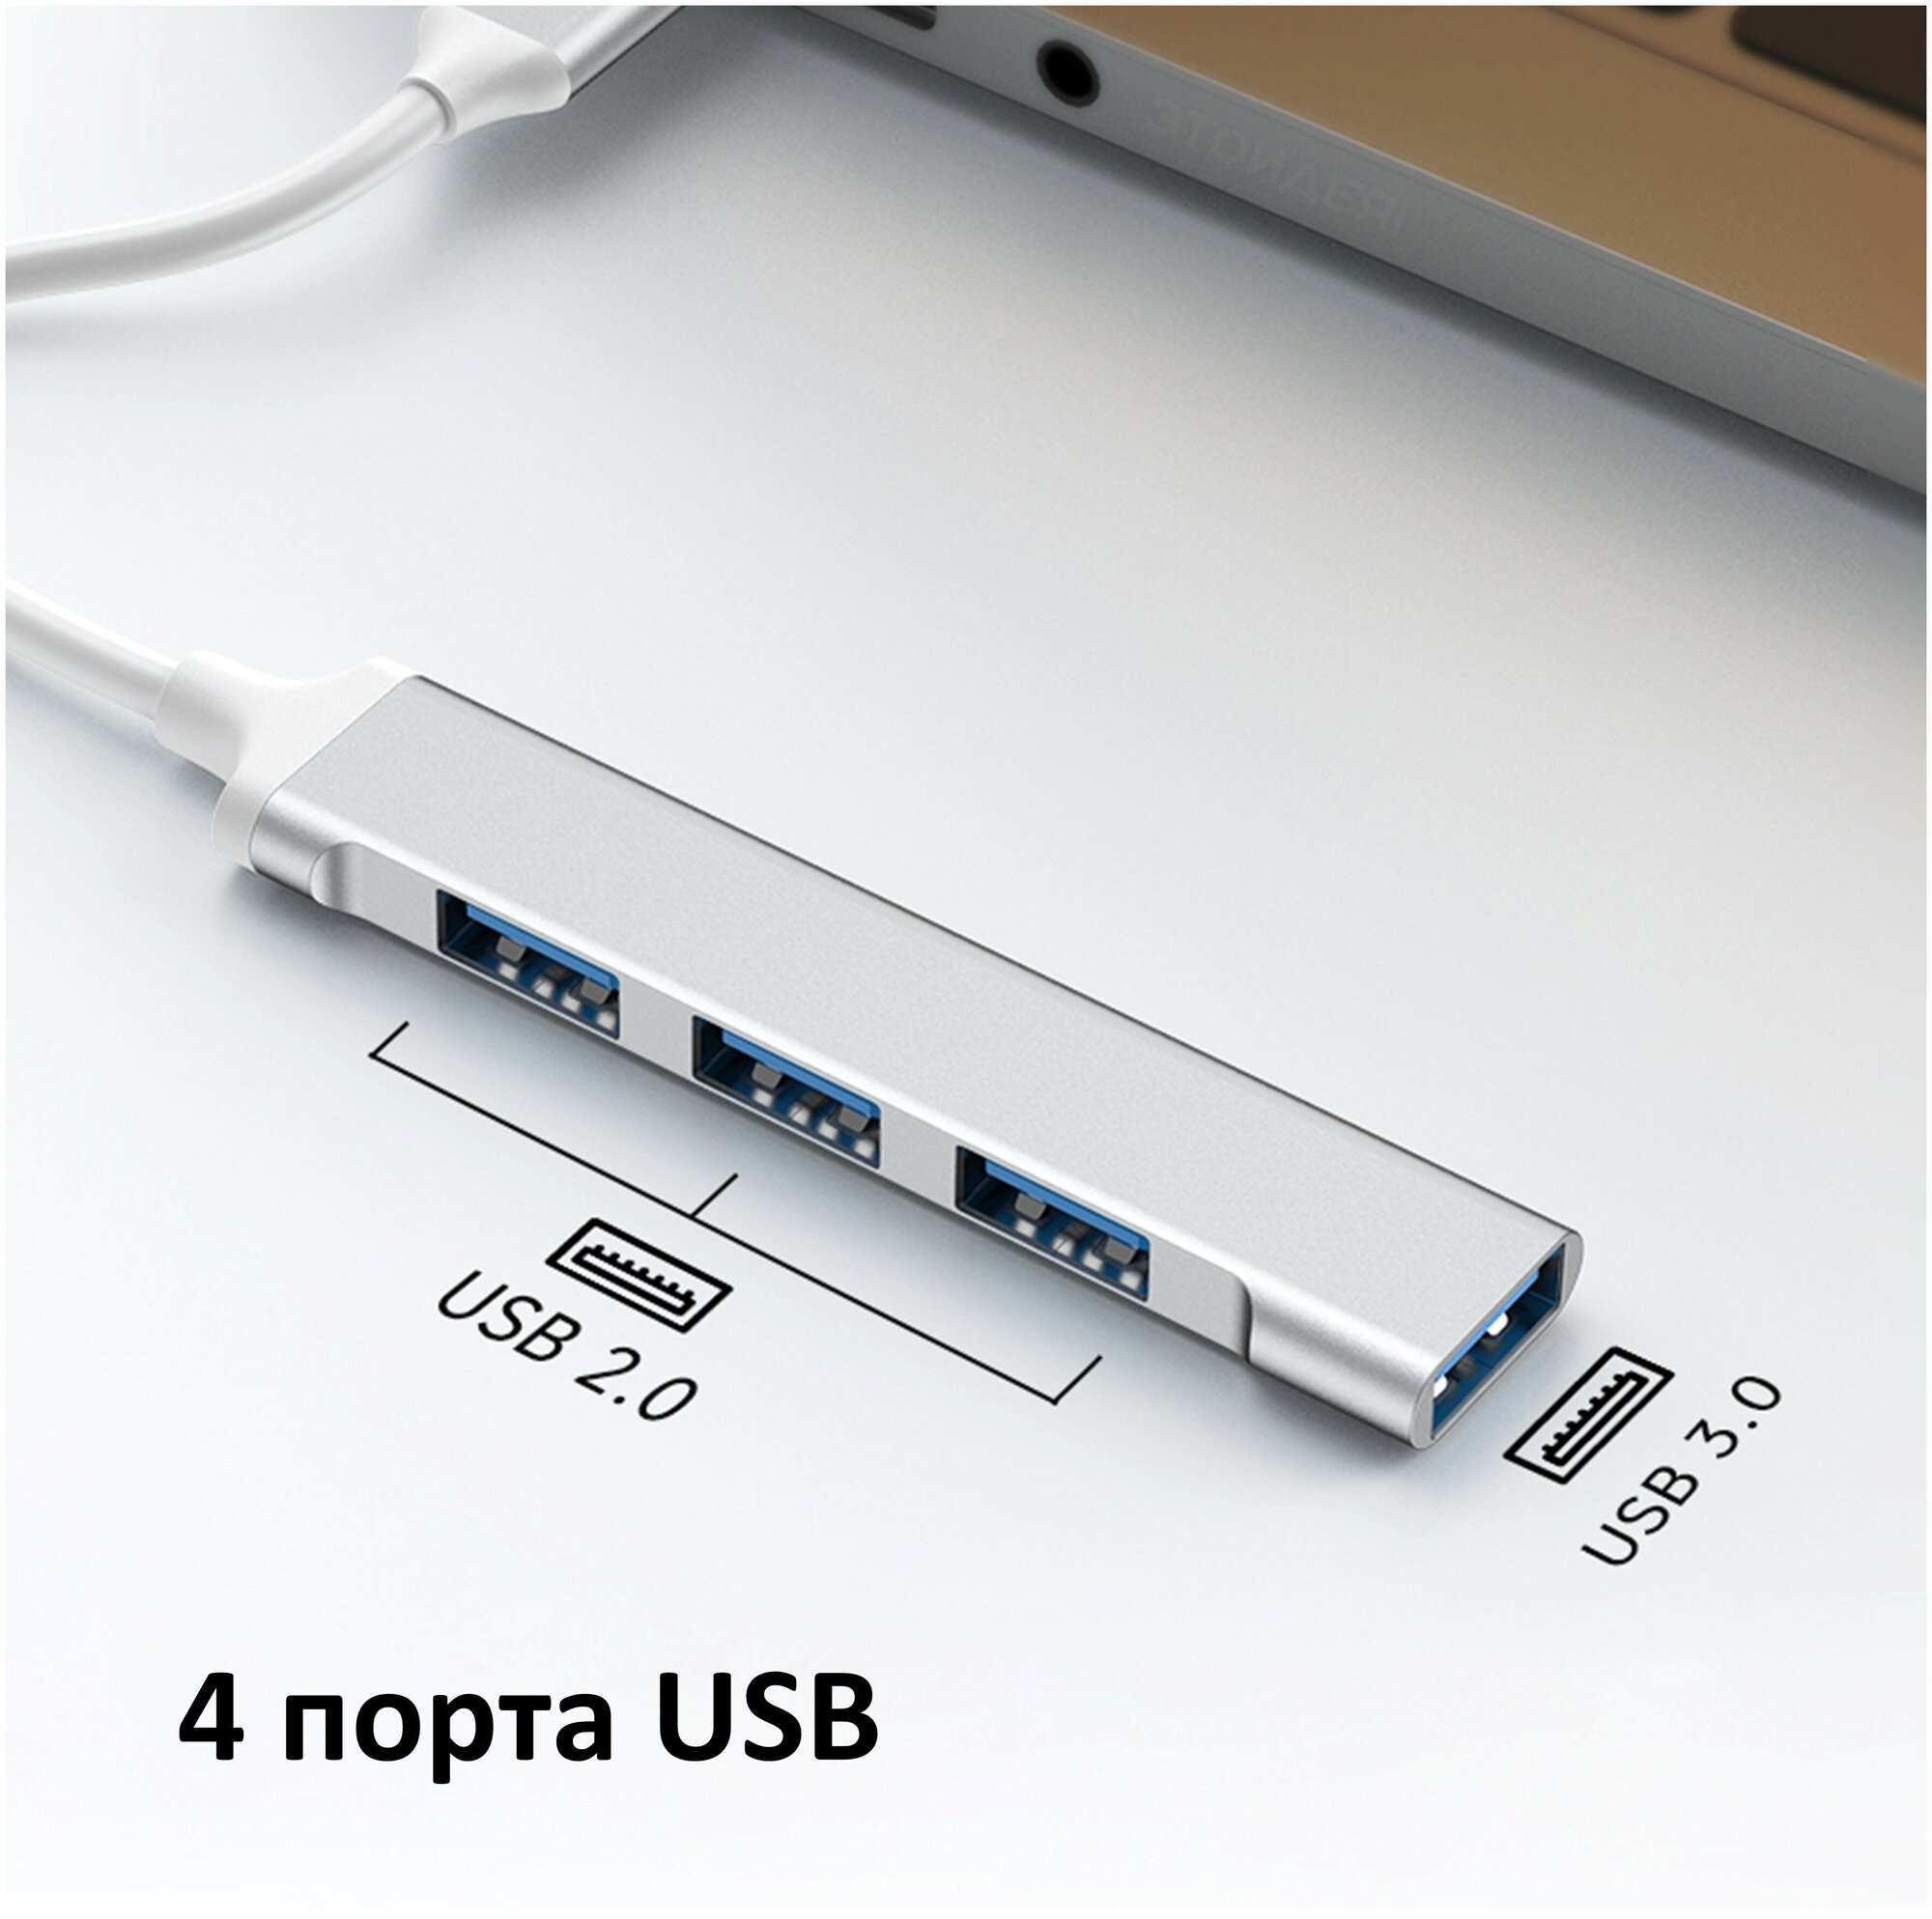 Мини USB хаб NOBUS на 4 порта (USB 3.0 и 2.0), серебристый / переходник USB-A для ноутбука